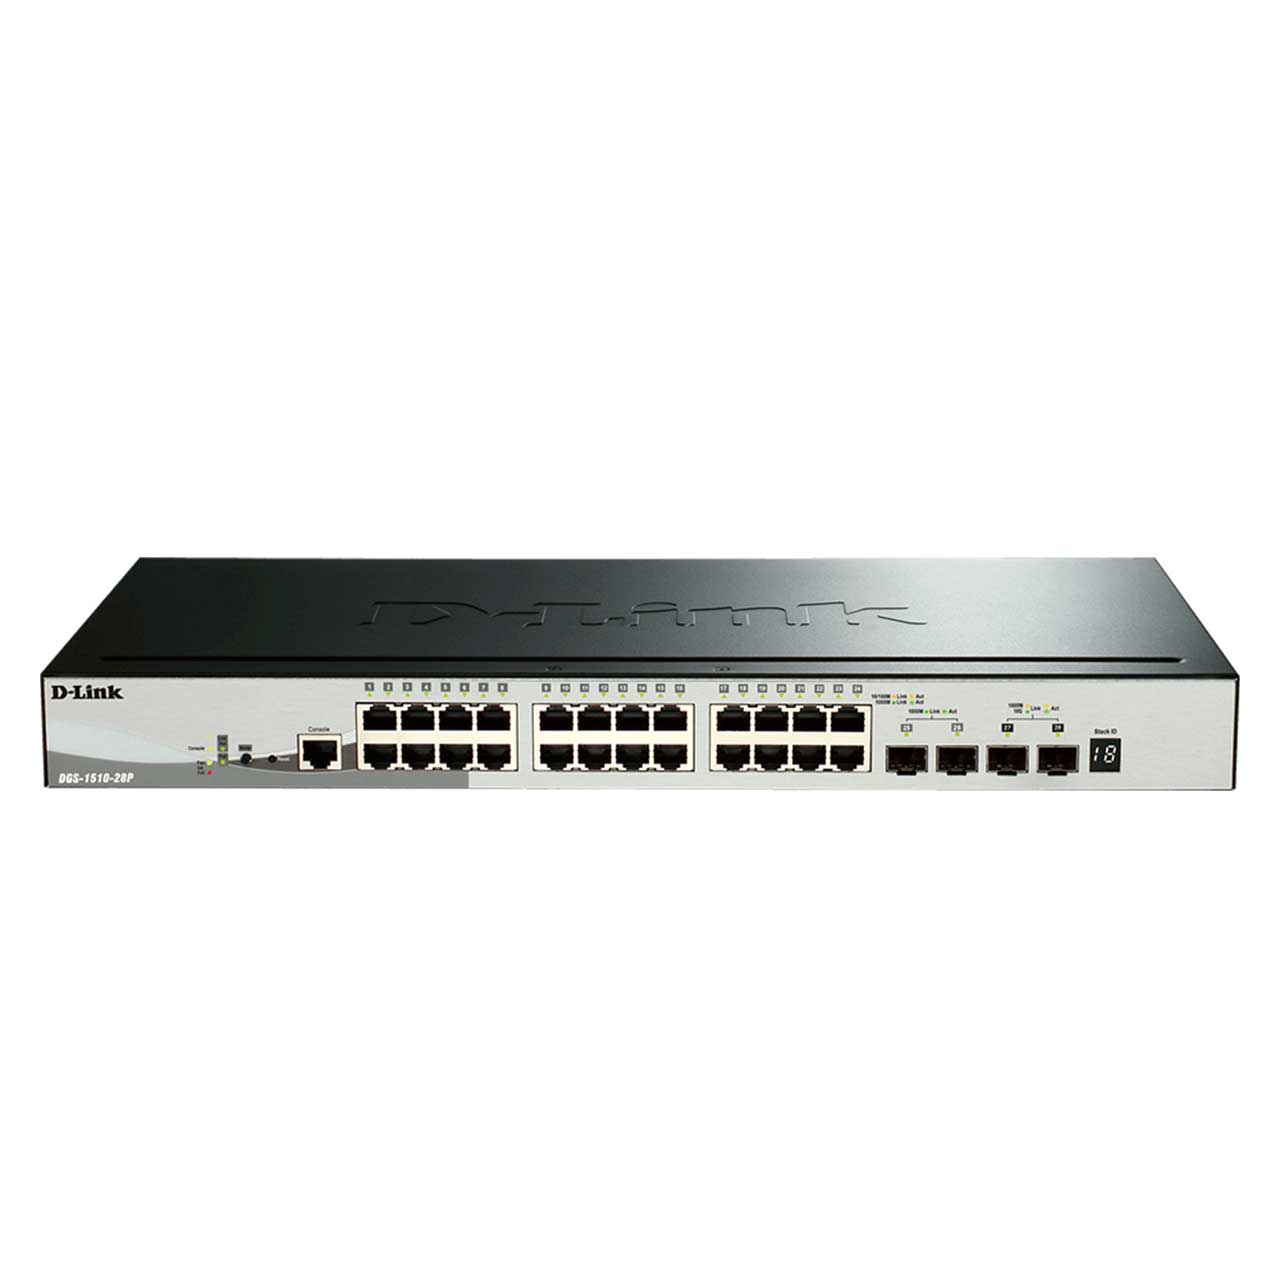 سوئیچ شبکه 28 پورت دی لینک D-Link Smart Managed Switch DGS-1510-28P